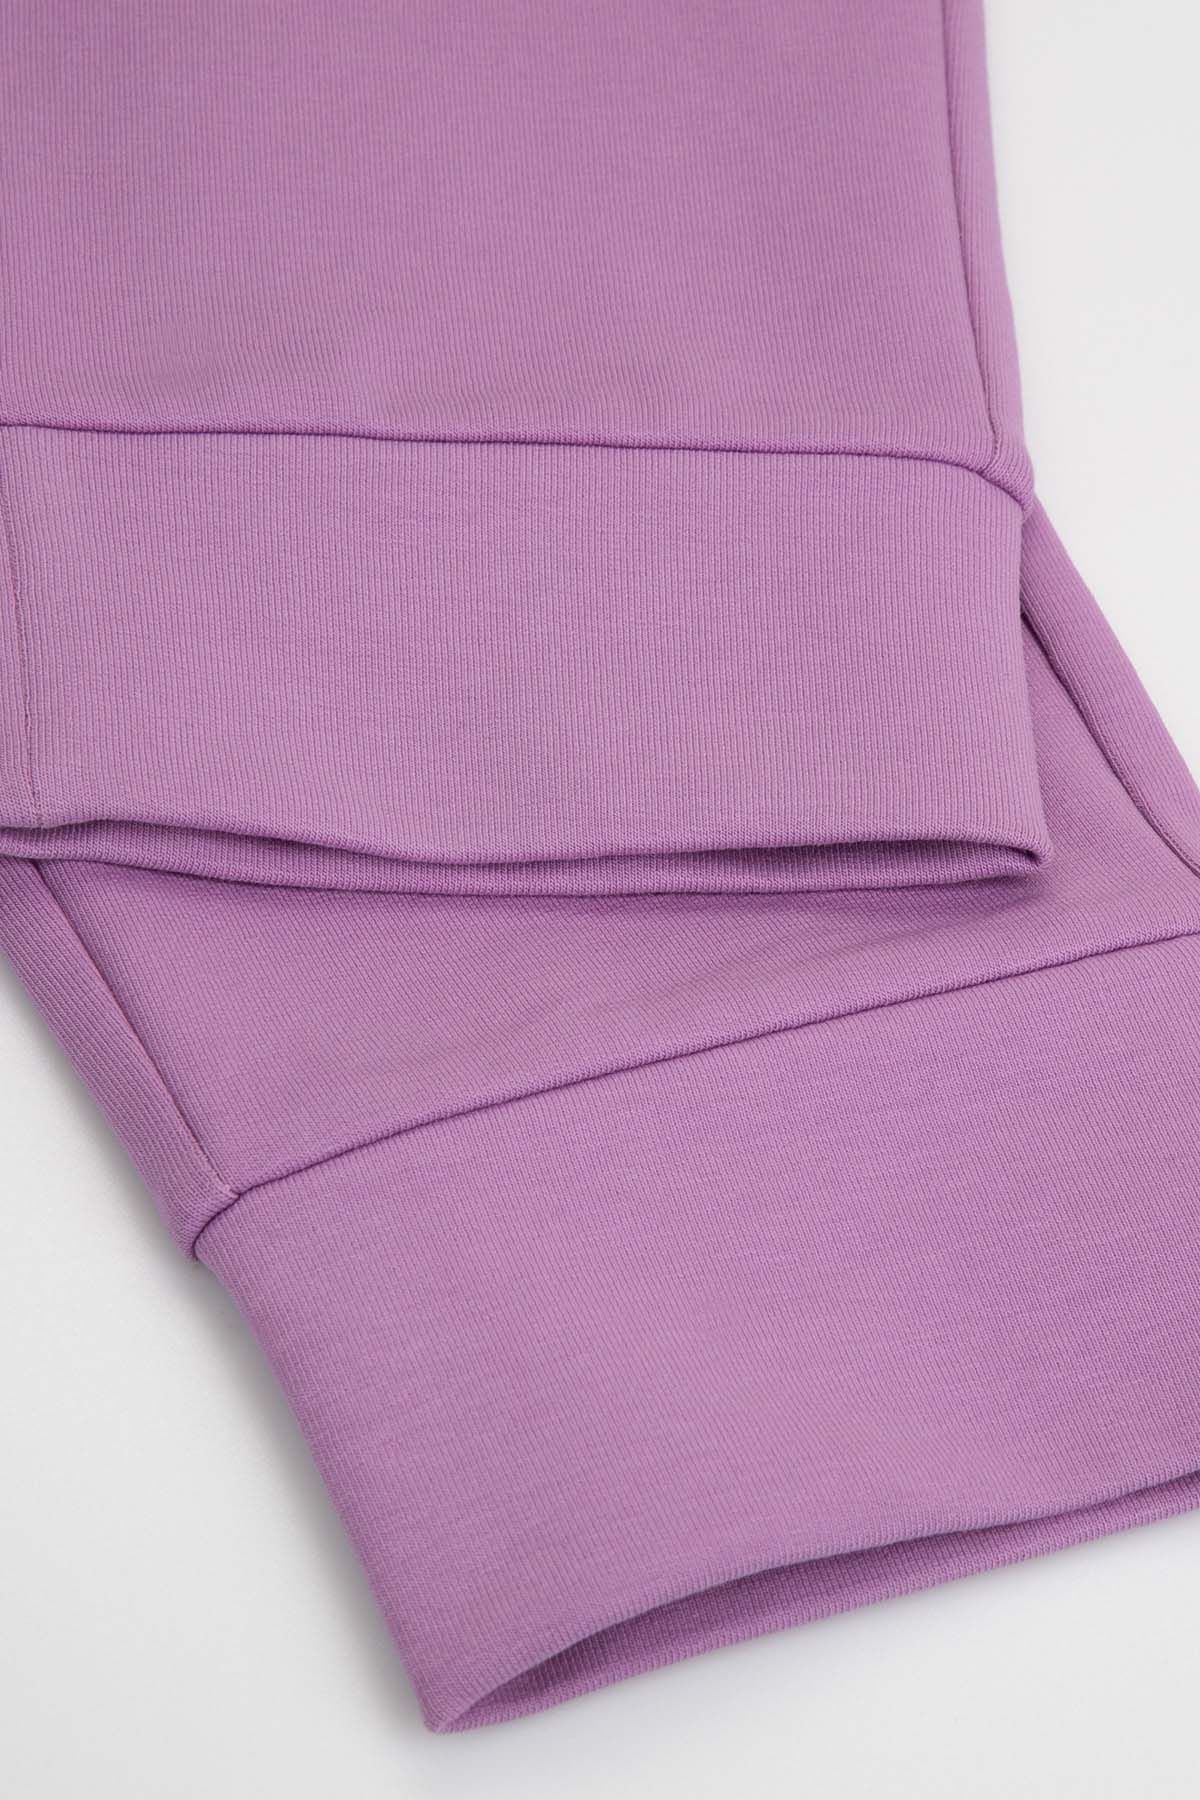 Spodnie dresowe fioletowe z kieszeniami 2219479